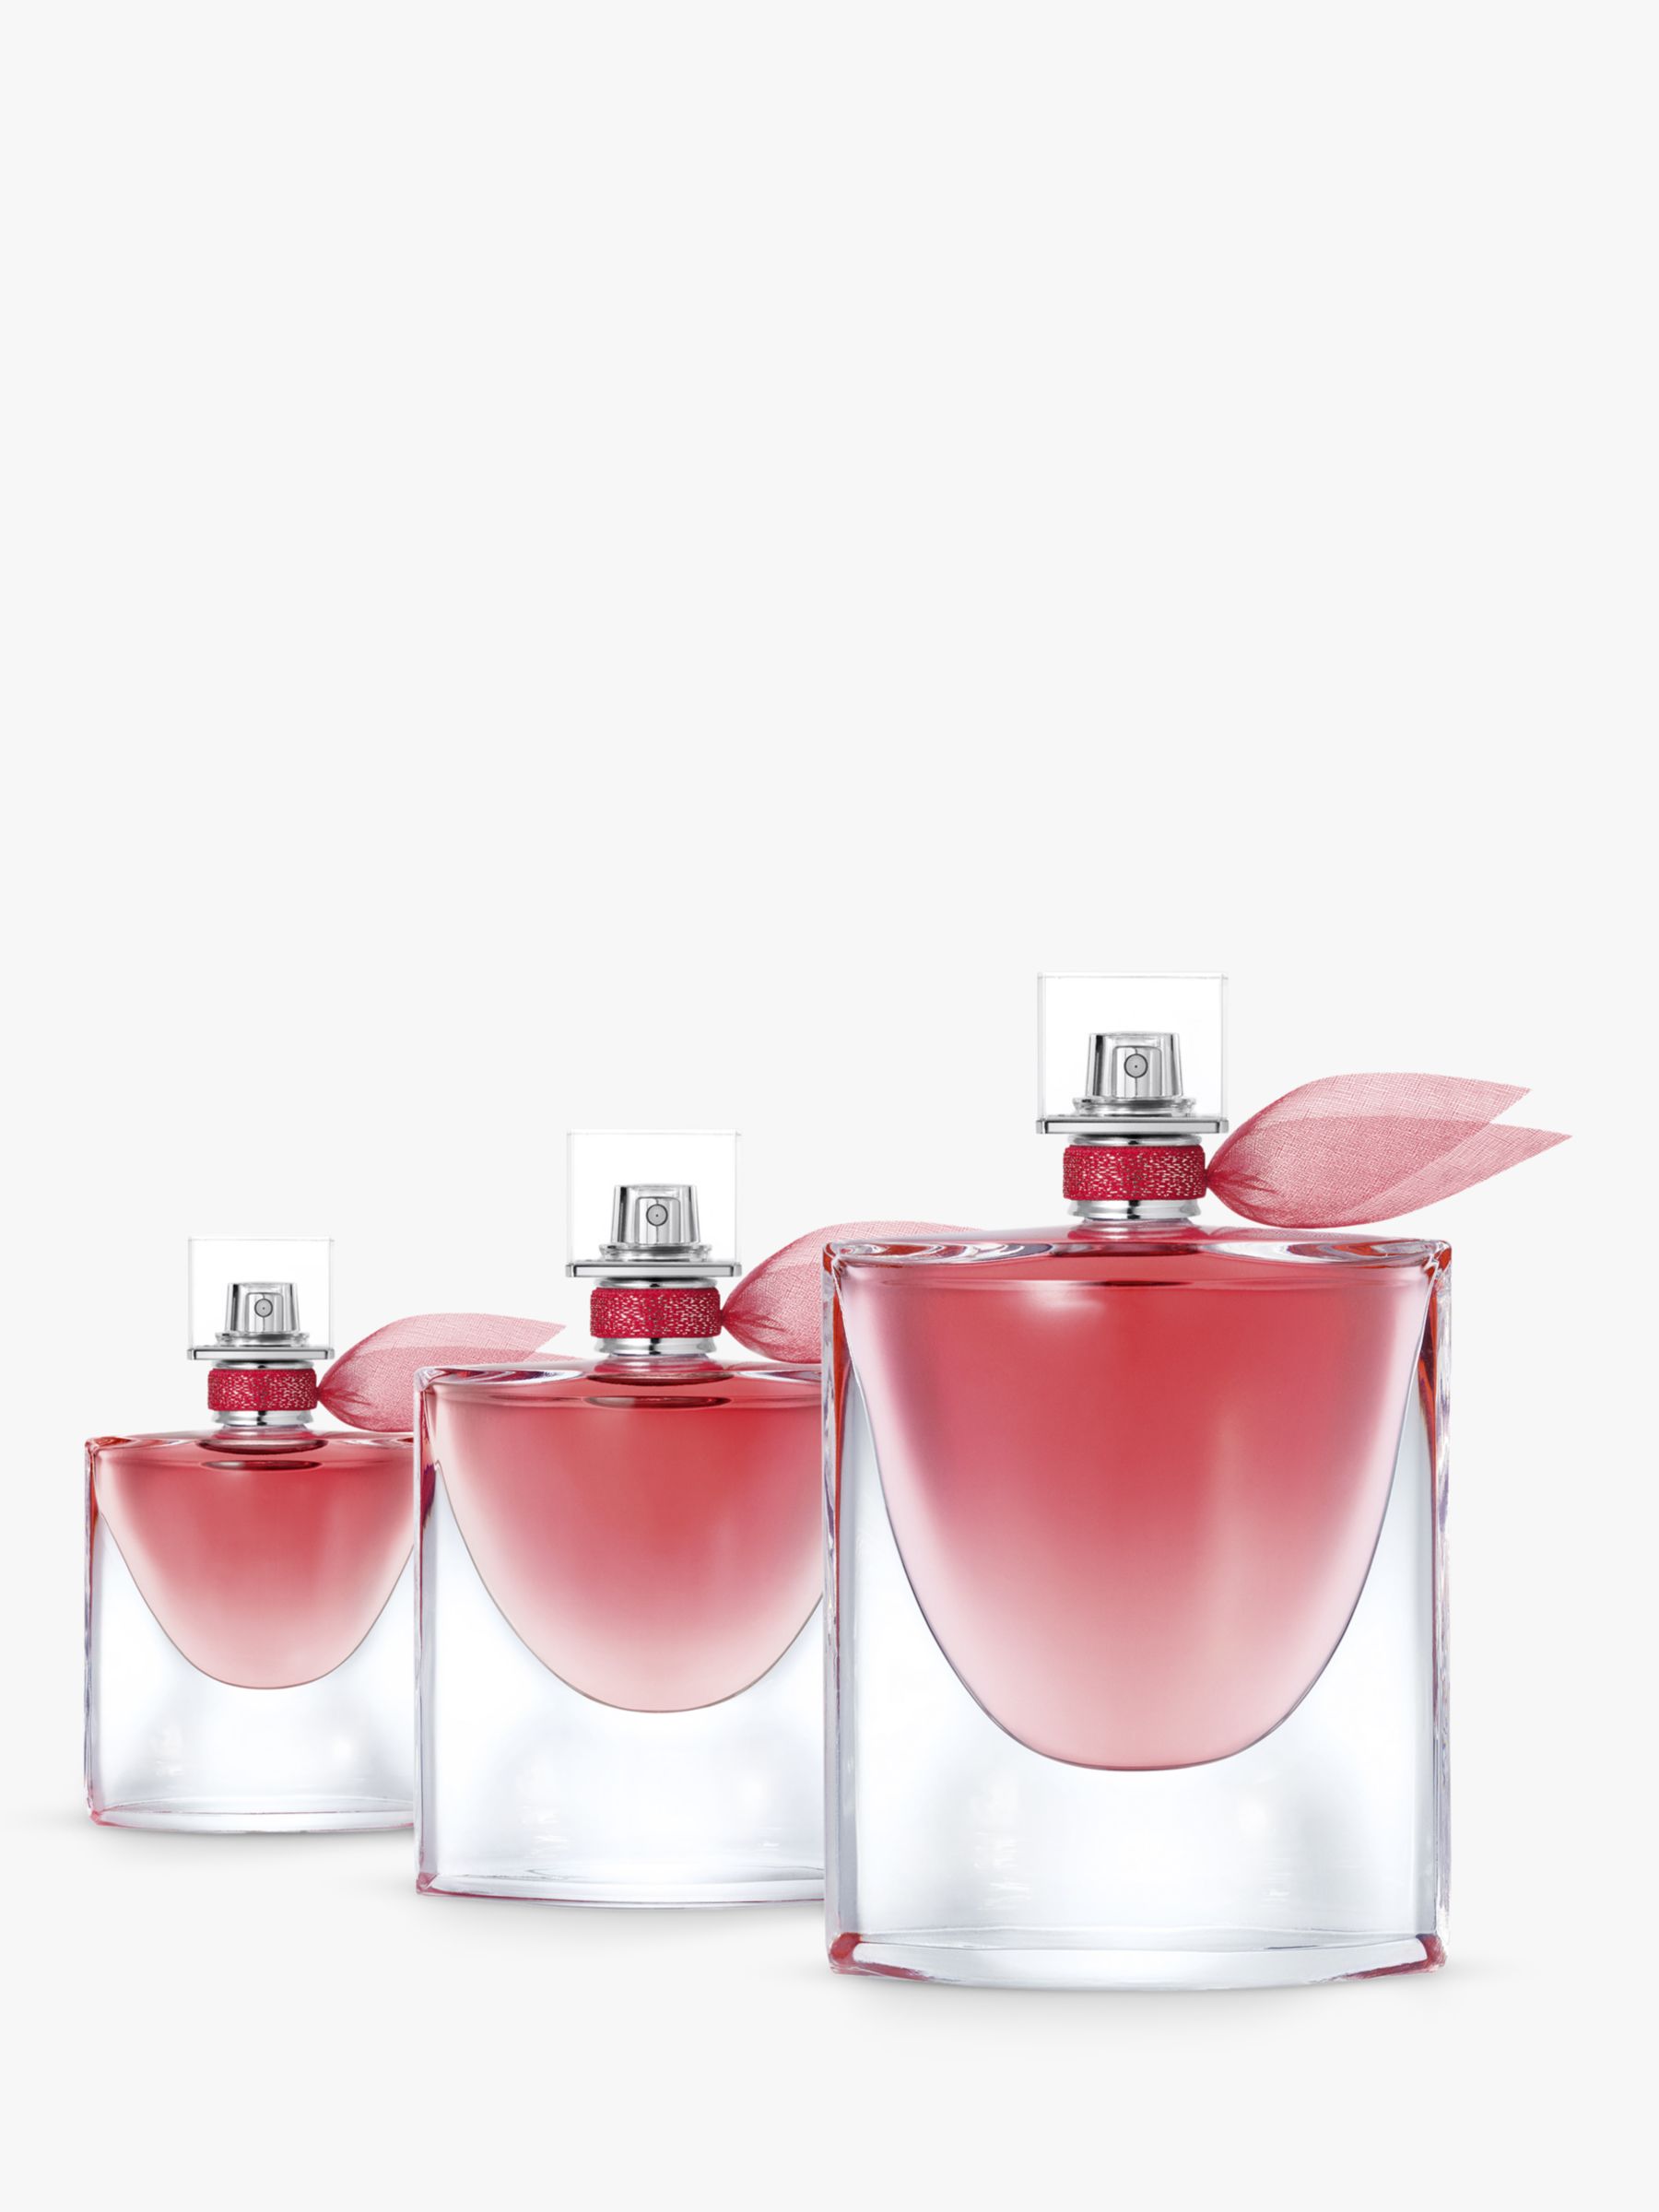 La Vie Est Belle Intensément eau de parfum, 50 ml – Lancôme